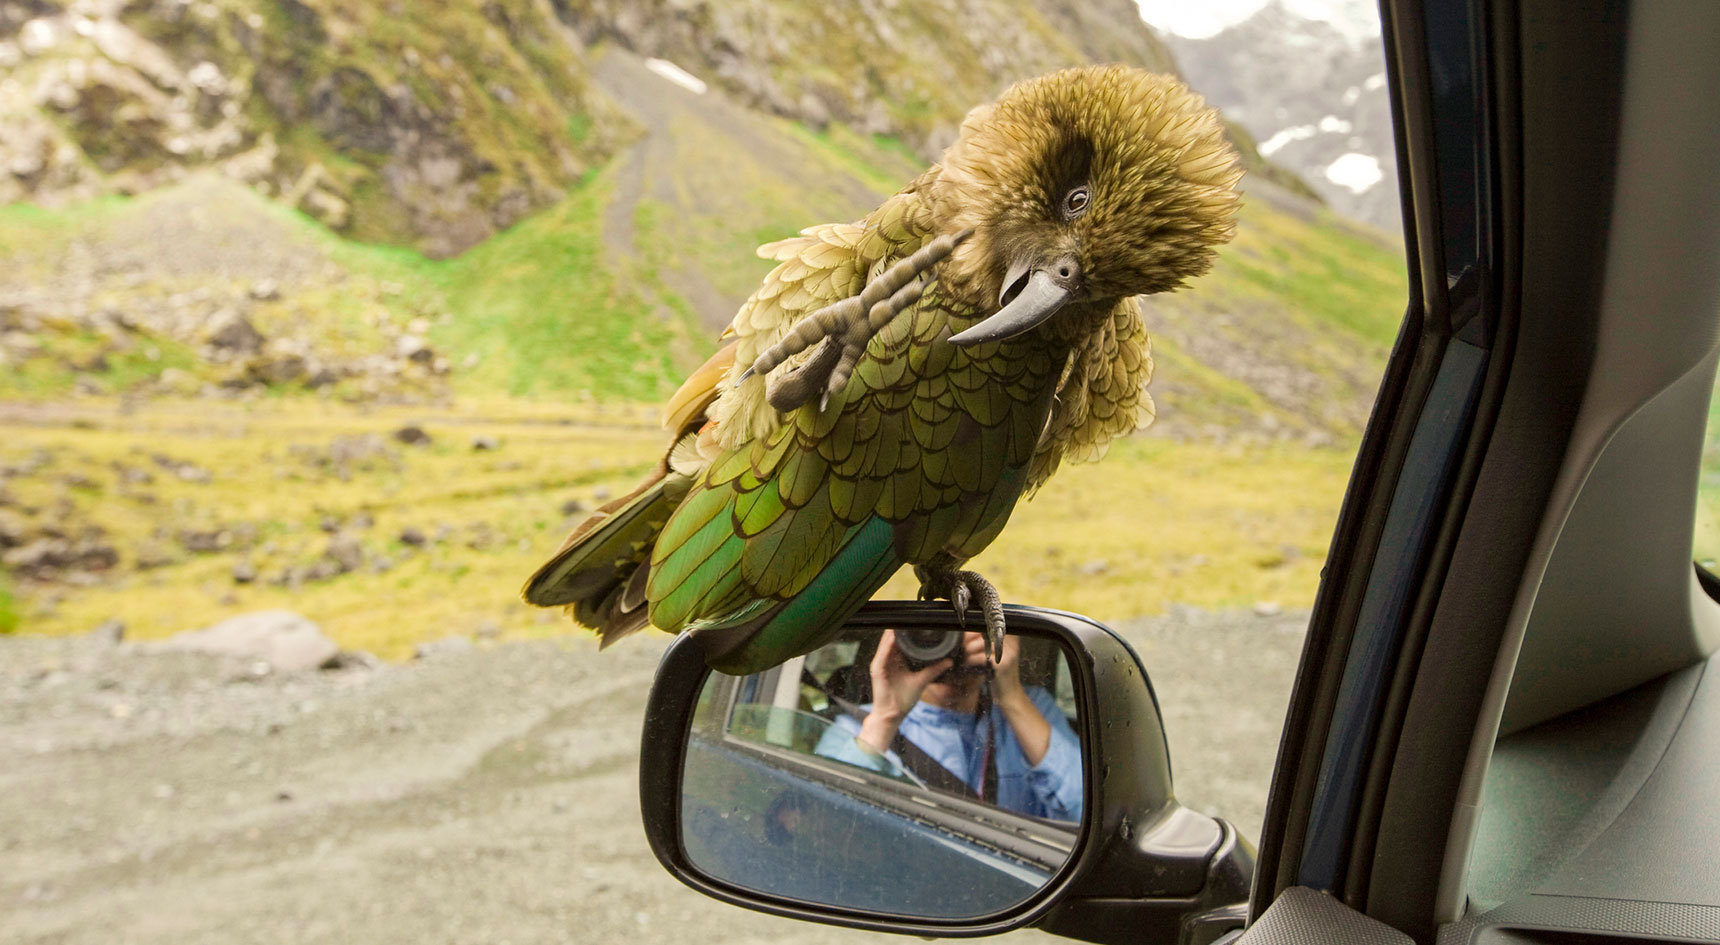 Kea bird sitting on a car mirror